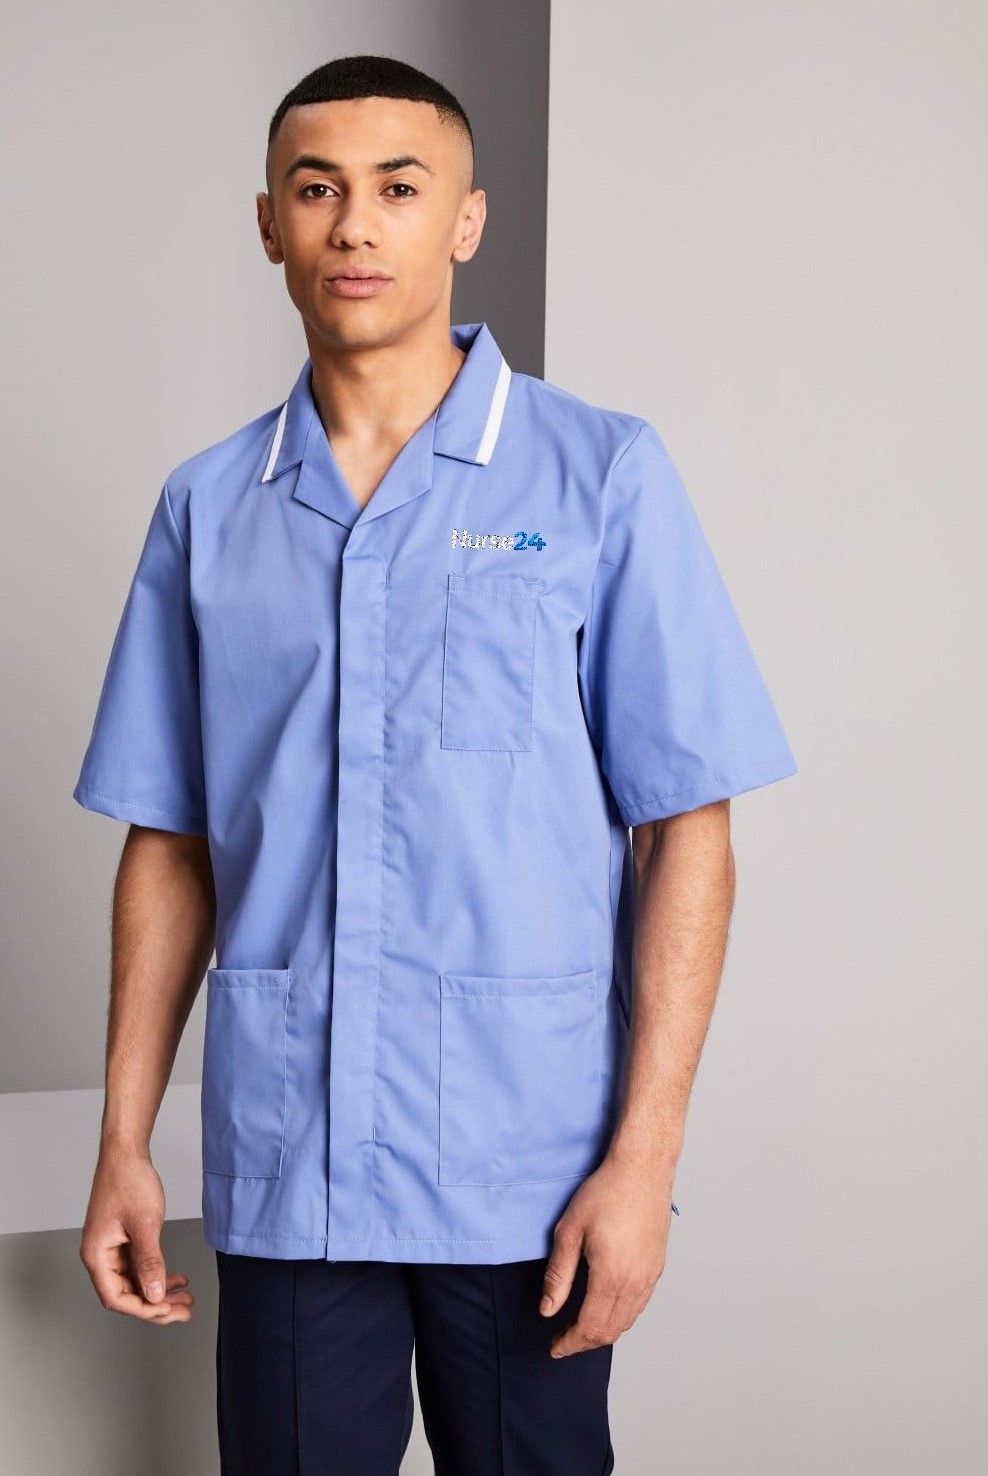 Male HCA Tunic-Sky Blue/White Trim (with a Nurse24 Embroidery Logo ...